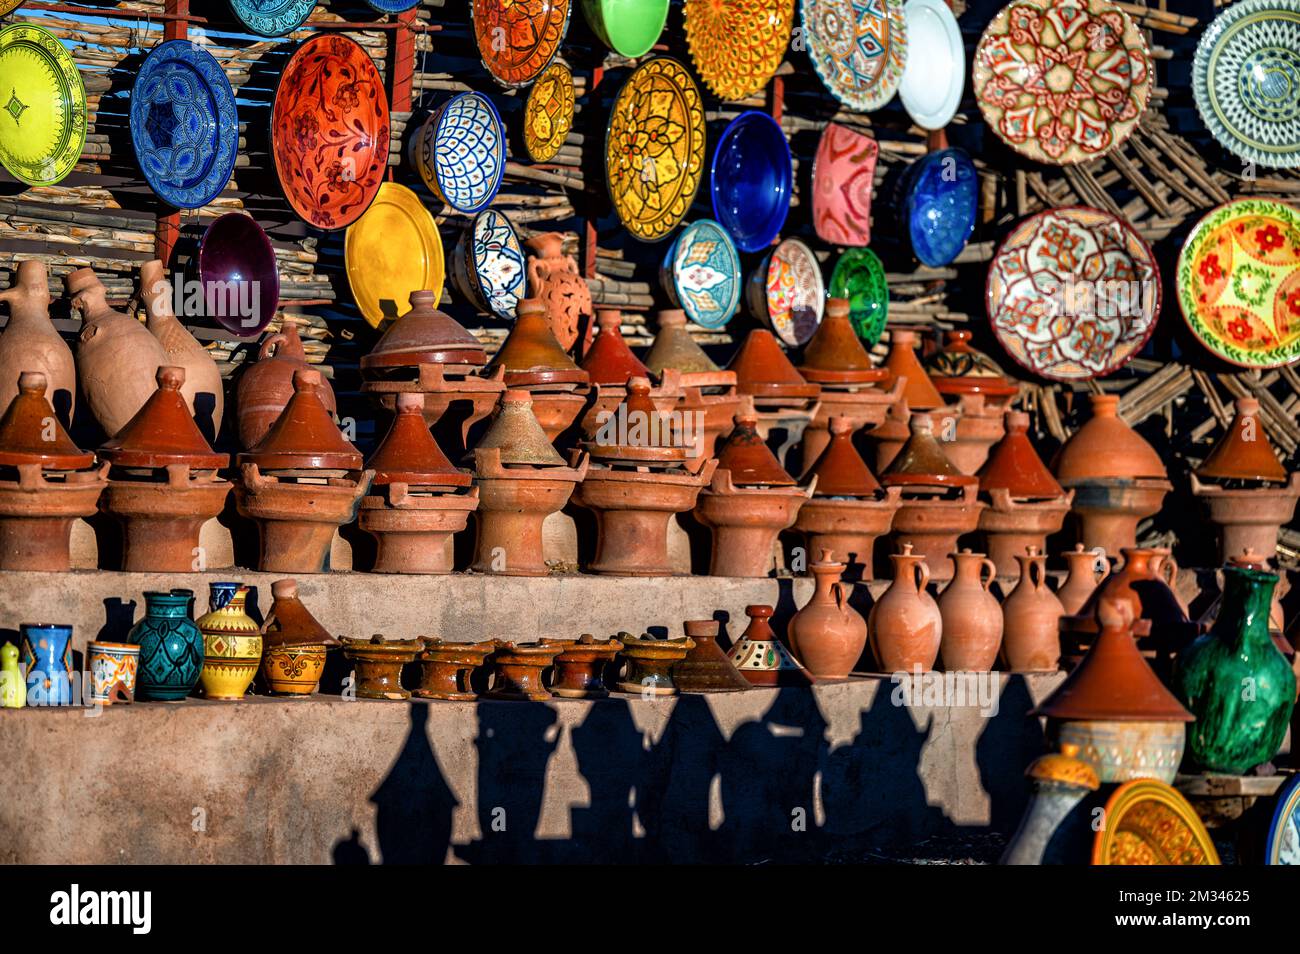 Tazentout, Ouarzazate, Marruecos - 28 de noviembre de 2022 - Un conjunto de platos tradicionales de arcilla marroquí hechos a mano en la tienda local. Cuencos, platos, tagines, ju Foto de stock